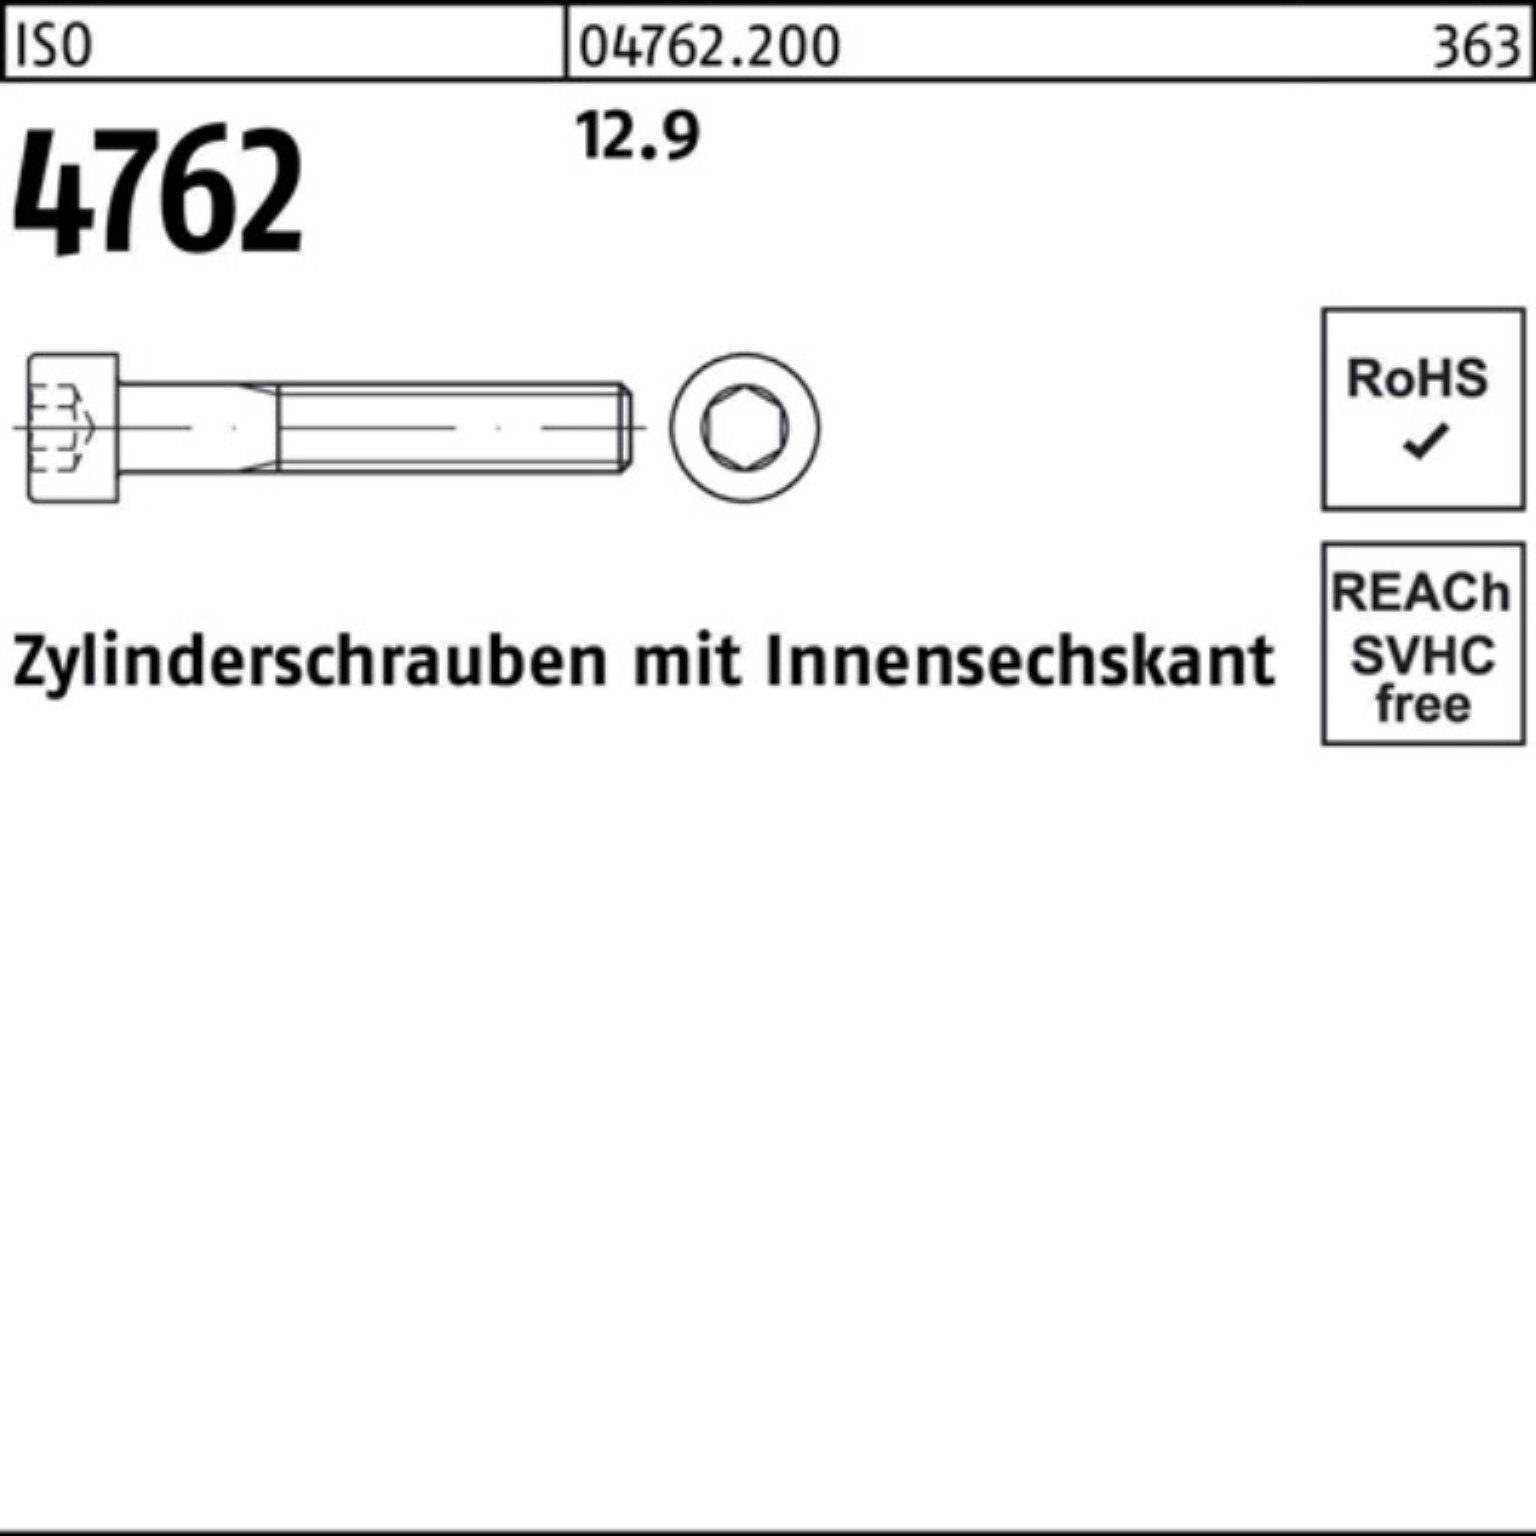 Pack Zylinderschraube Reyher 300 12.9 4762 M8x 100er 50 Zylinderschraube Stück Innen-6kt ISO